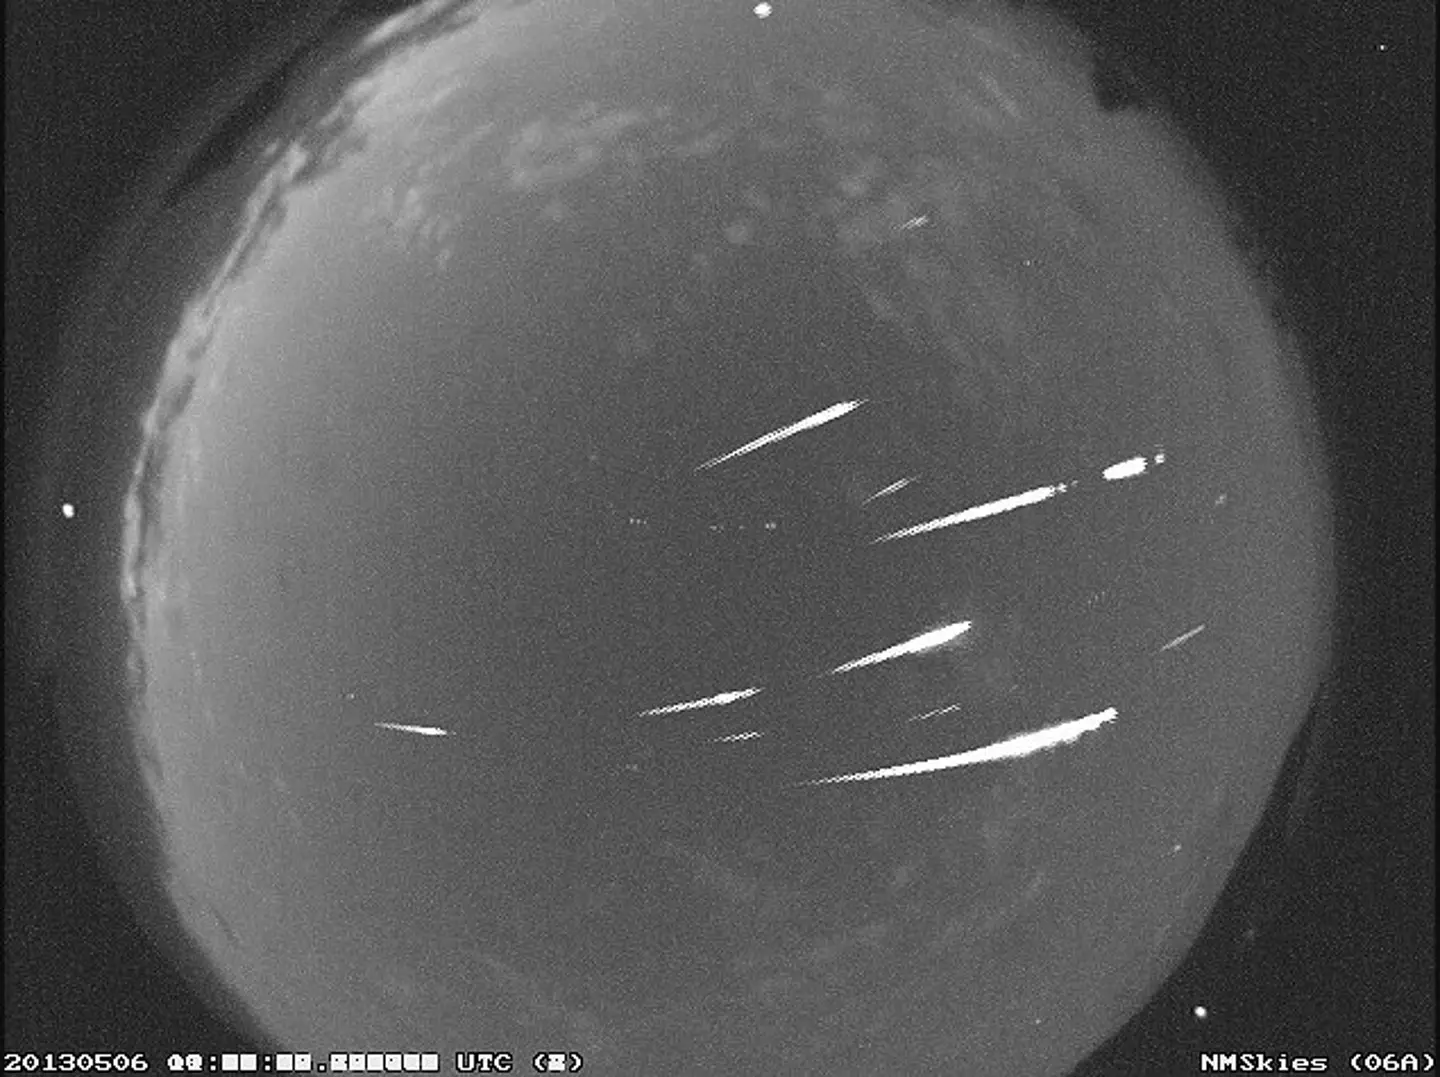 An image taken during the Eta Aquarid meteor shower in May, 2013.